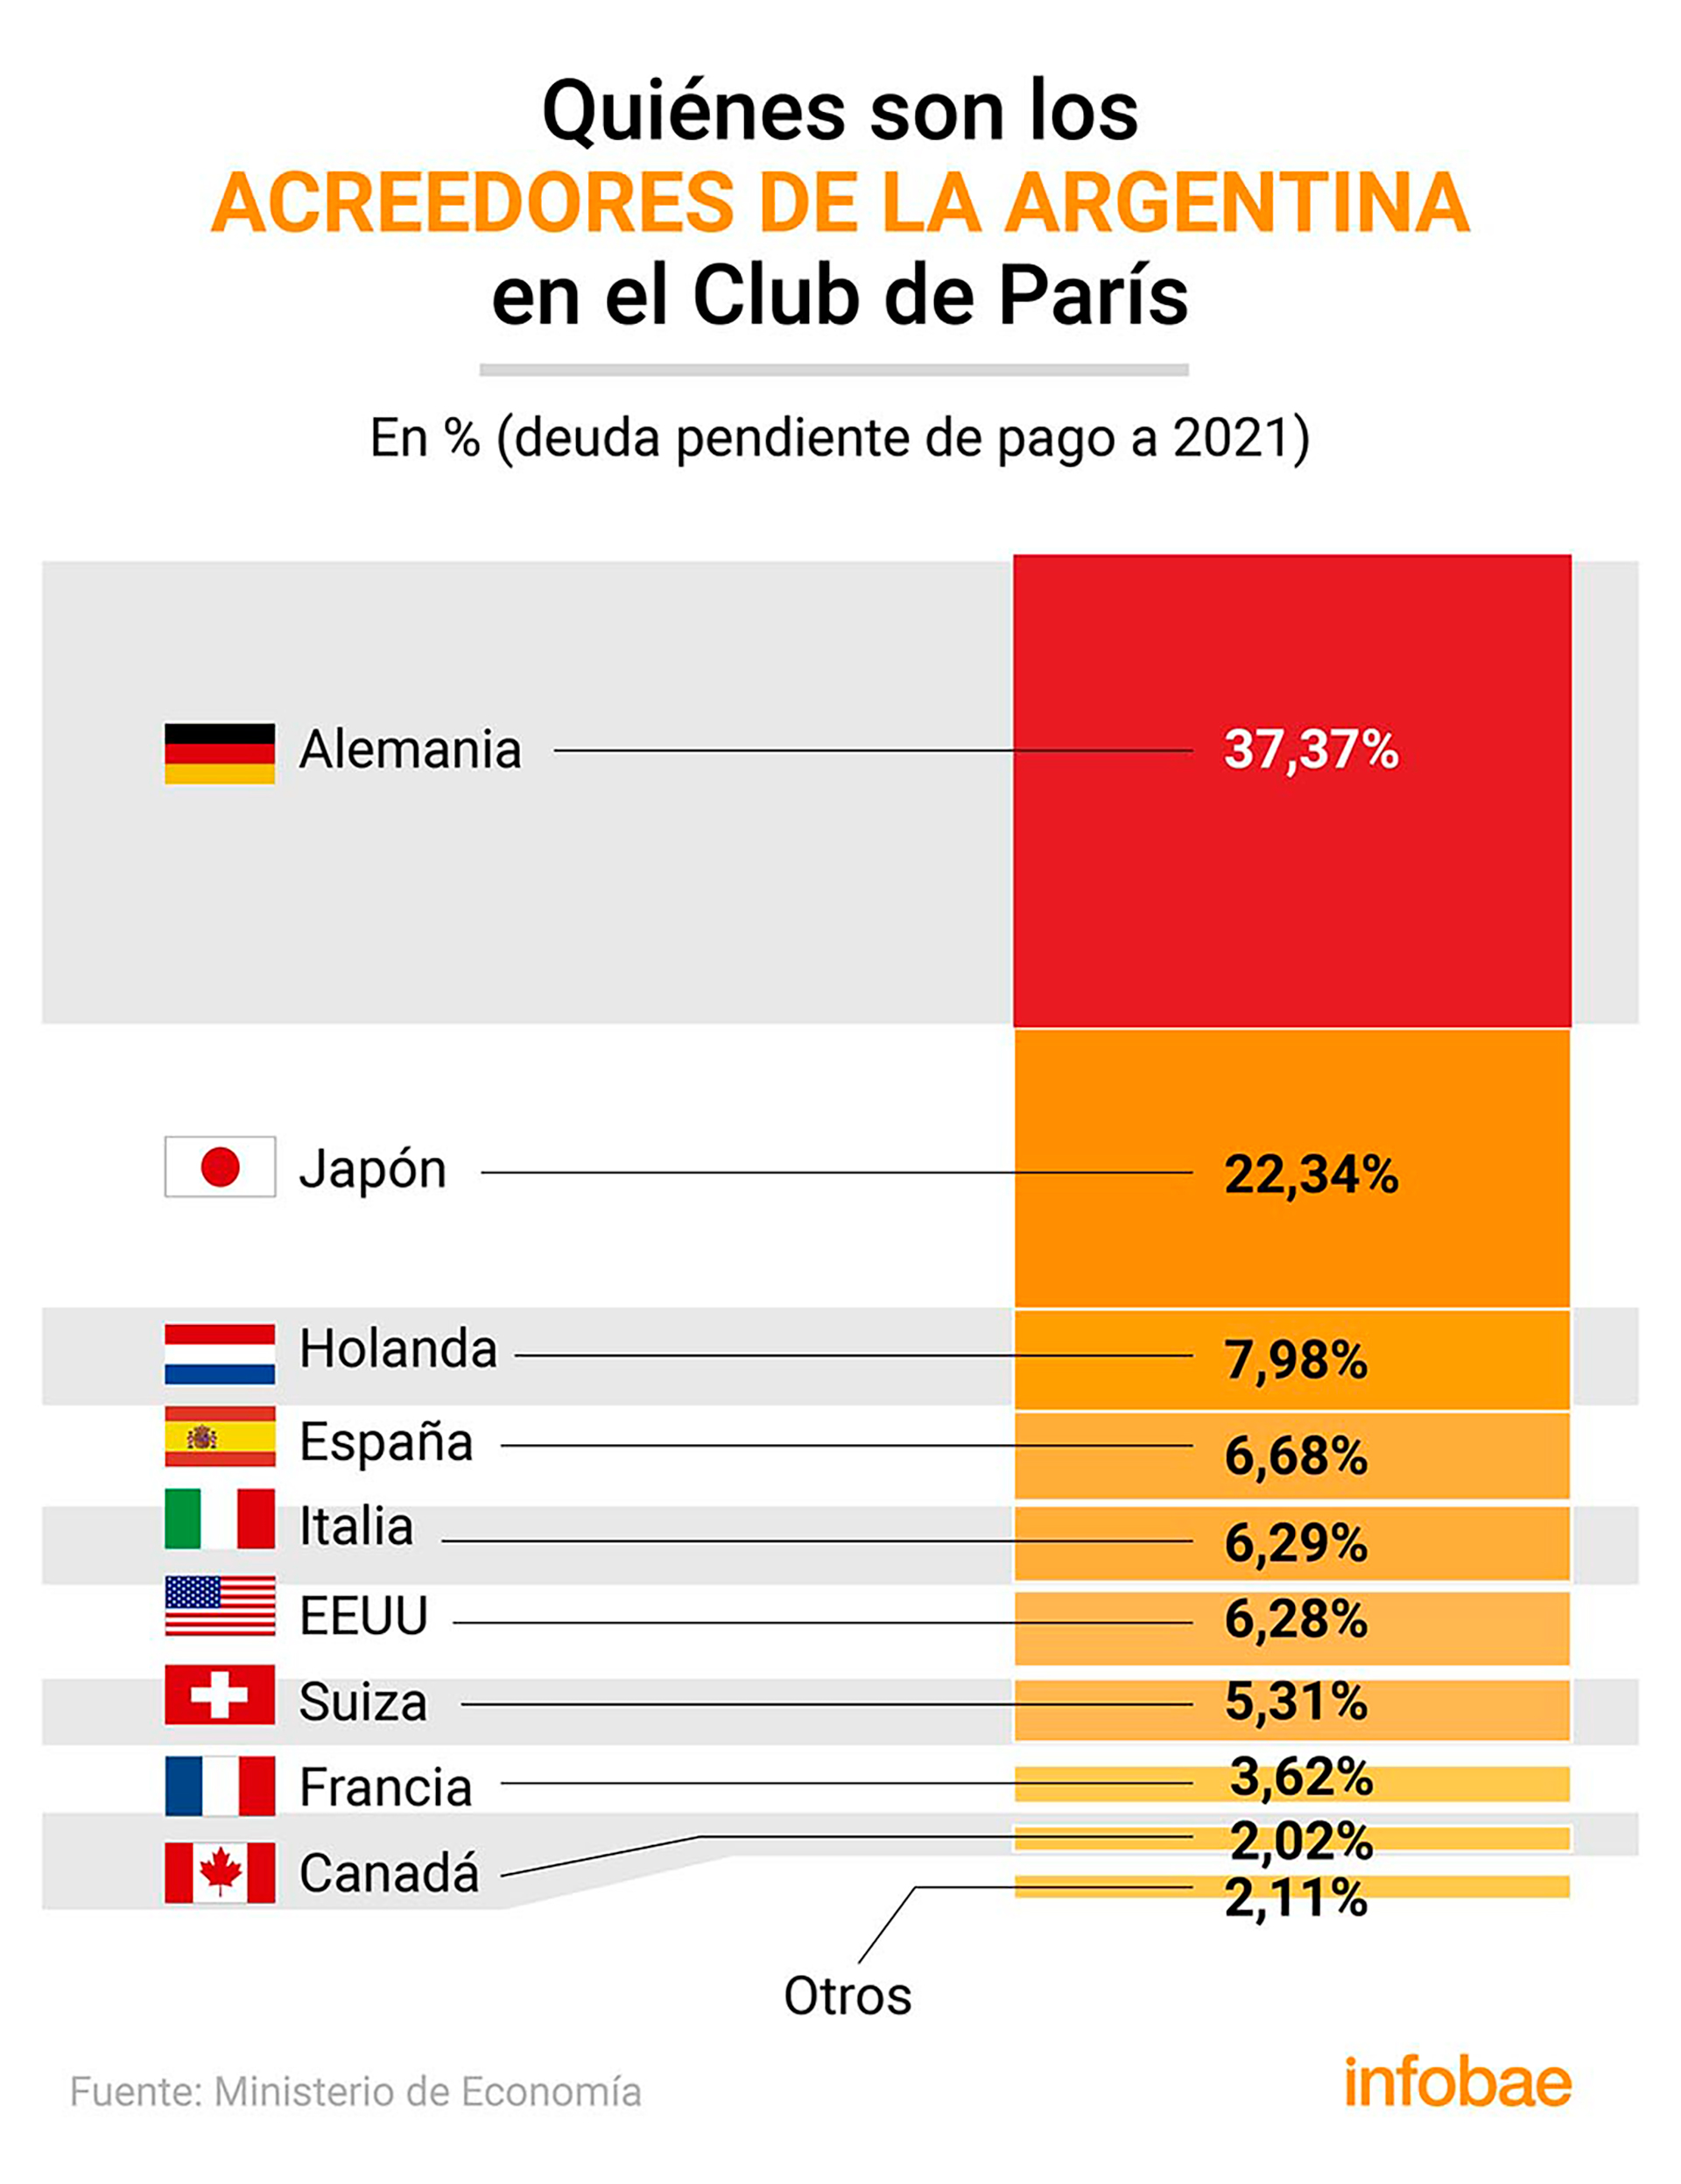 Los acreedores argentinos en el Club de París